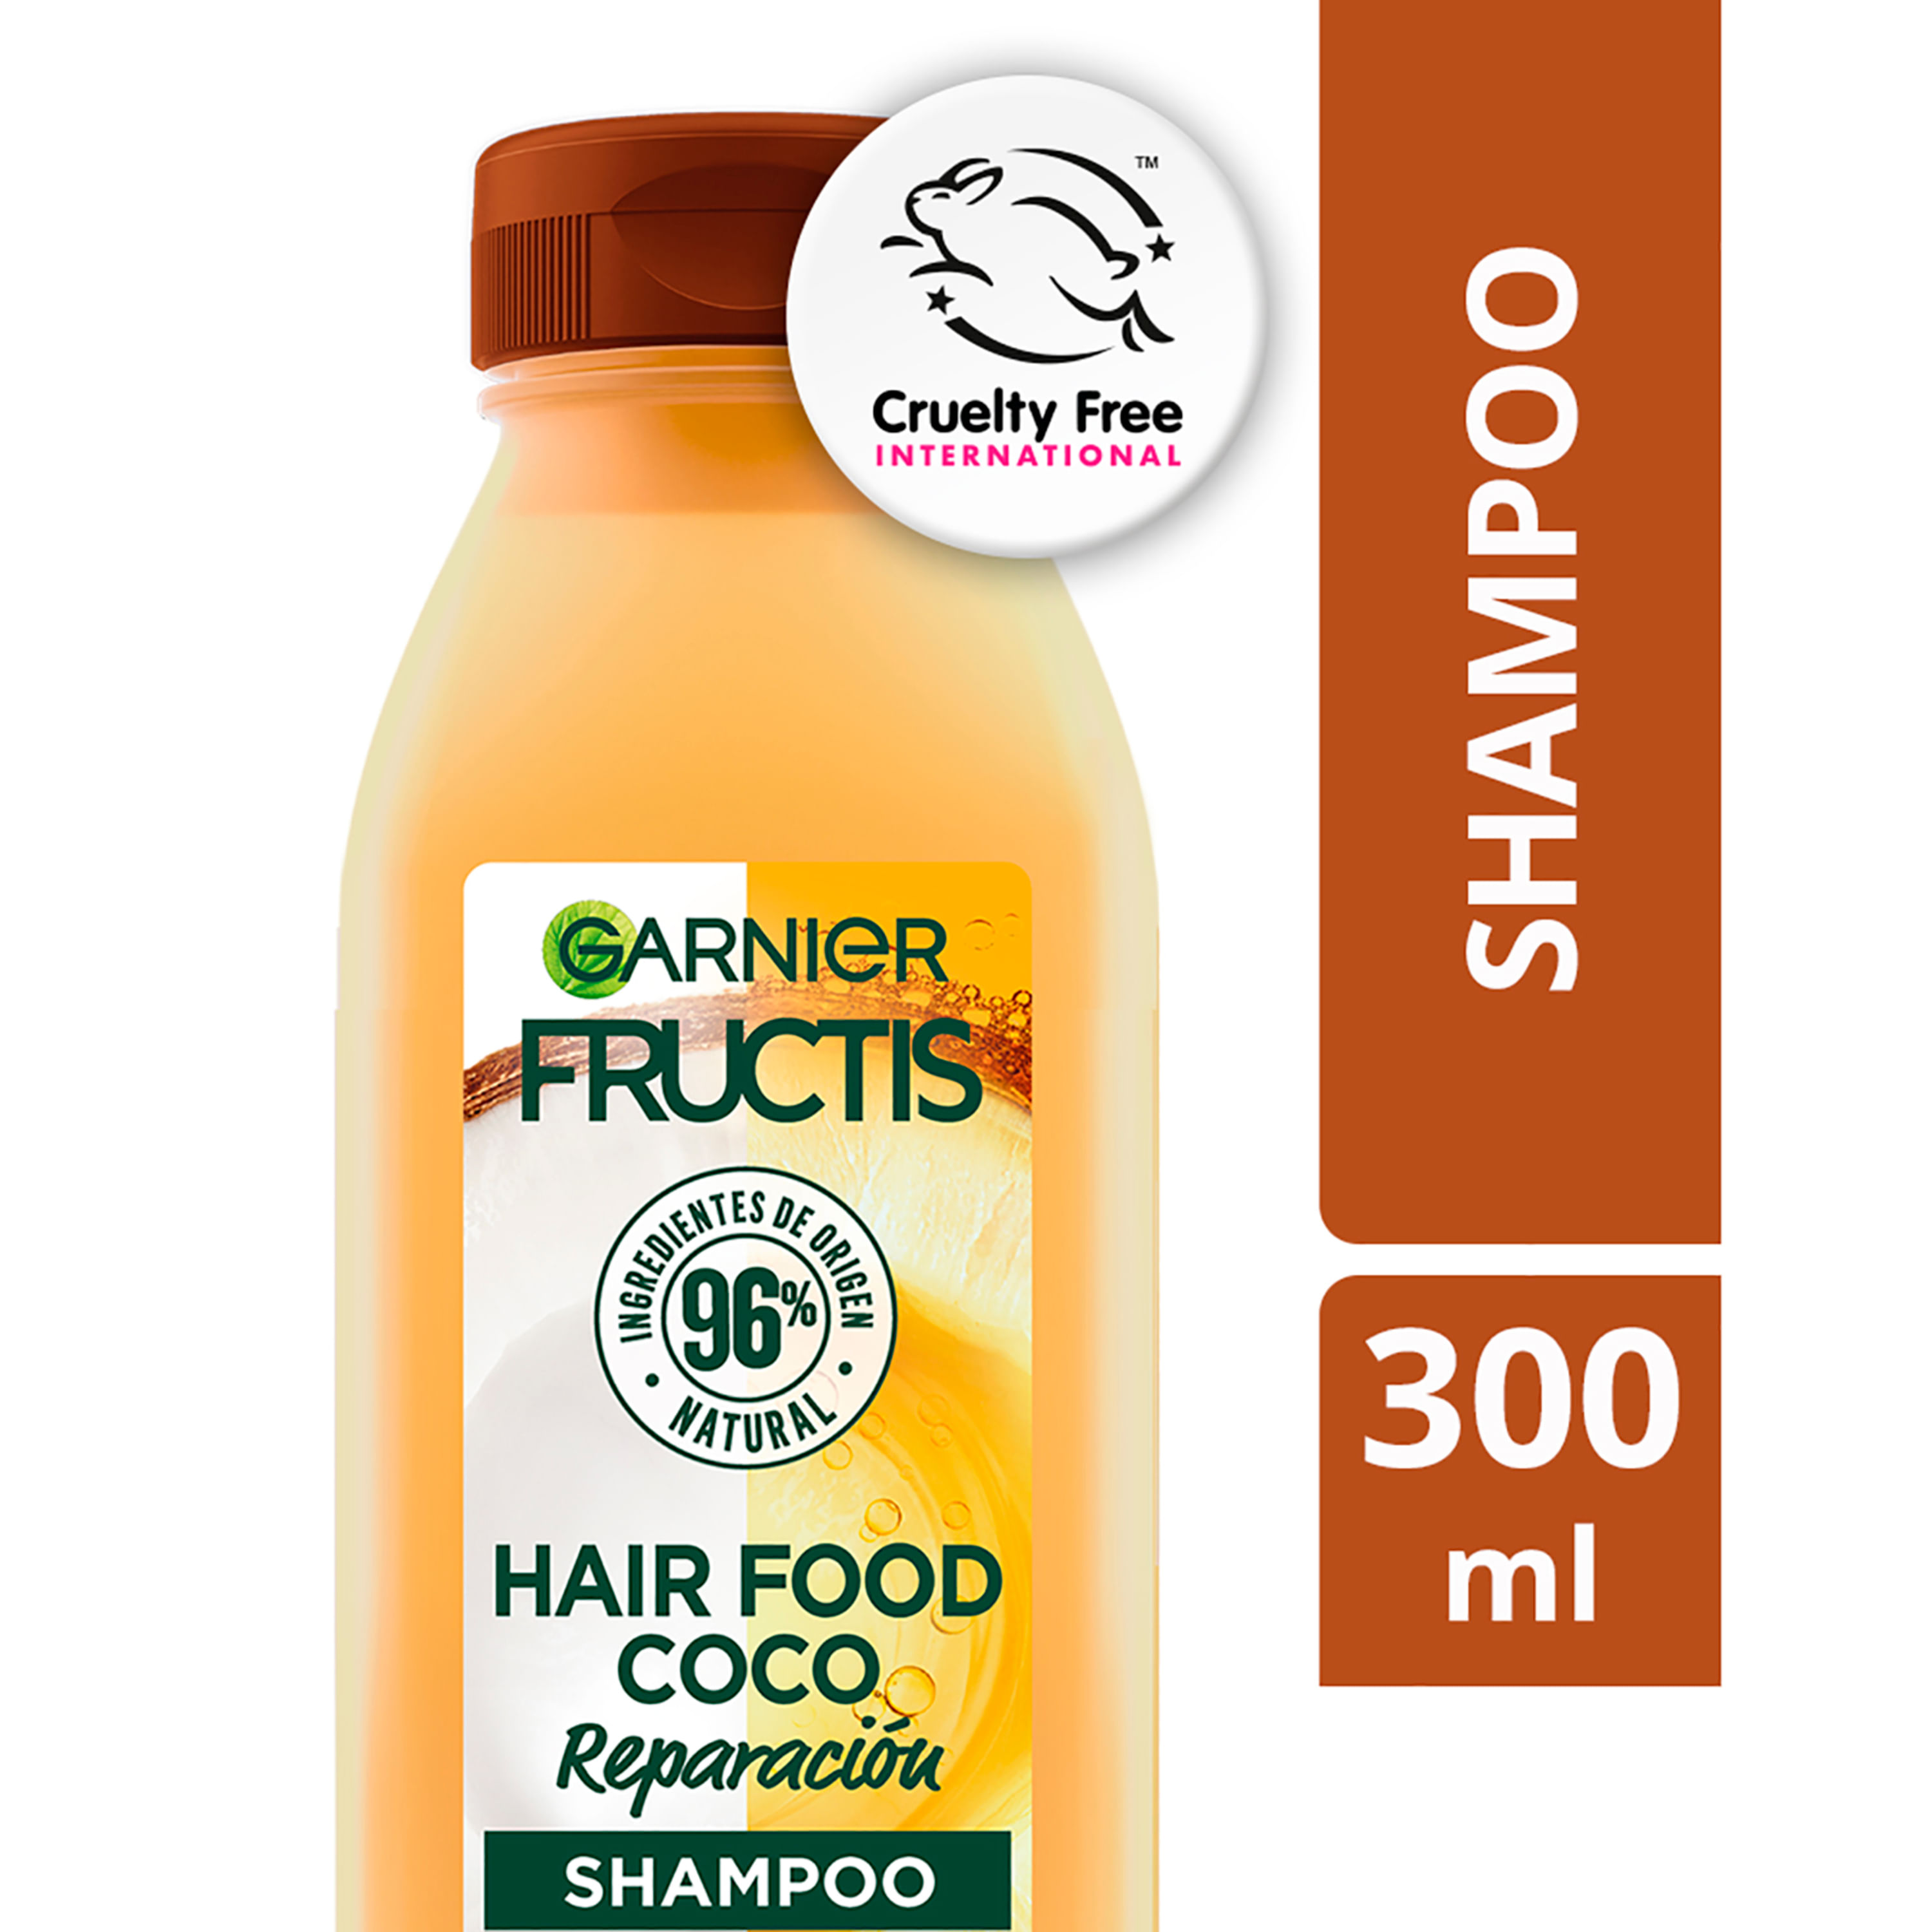 Hair-Food-Shampoo-De-Reparaci-n-Garnier-Fructis-Coco-300ml-1-6639